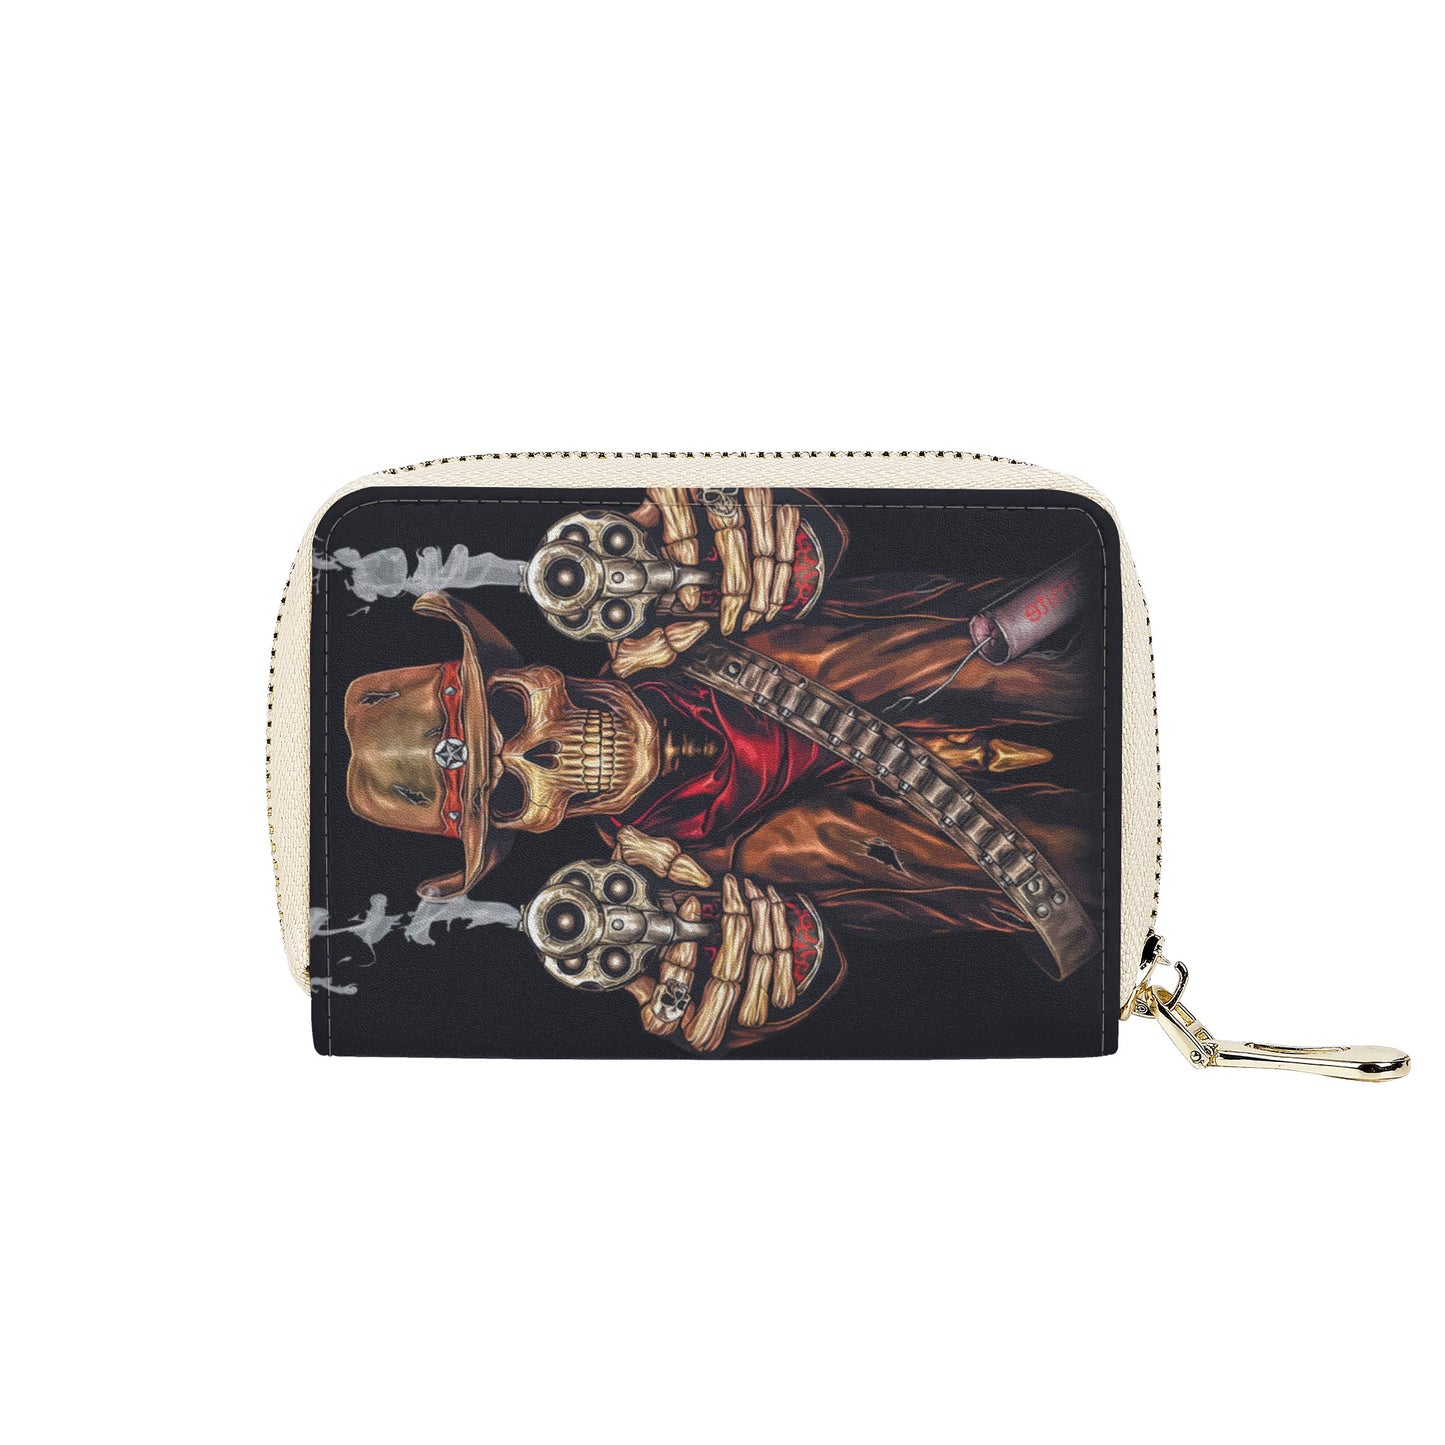 Skull Calaveras candy skull Zipper Card Holder